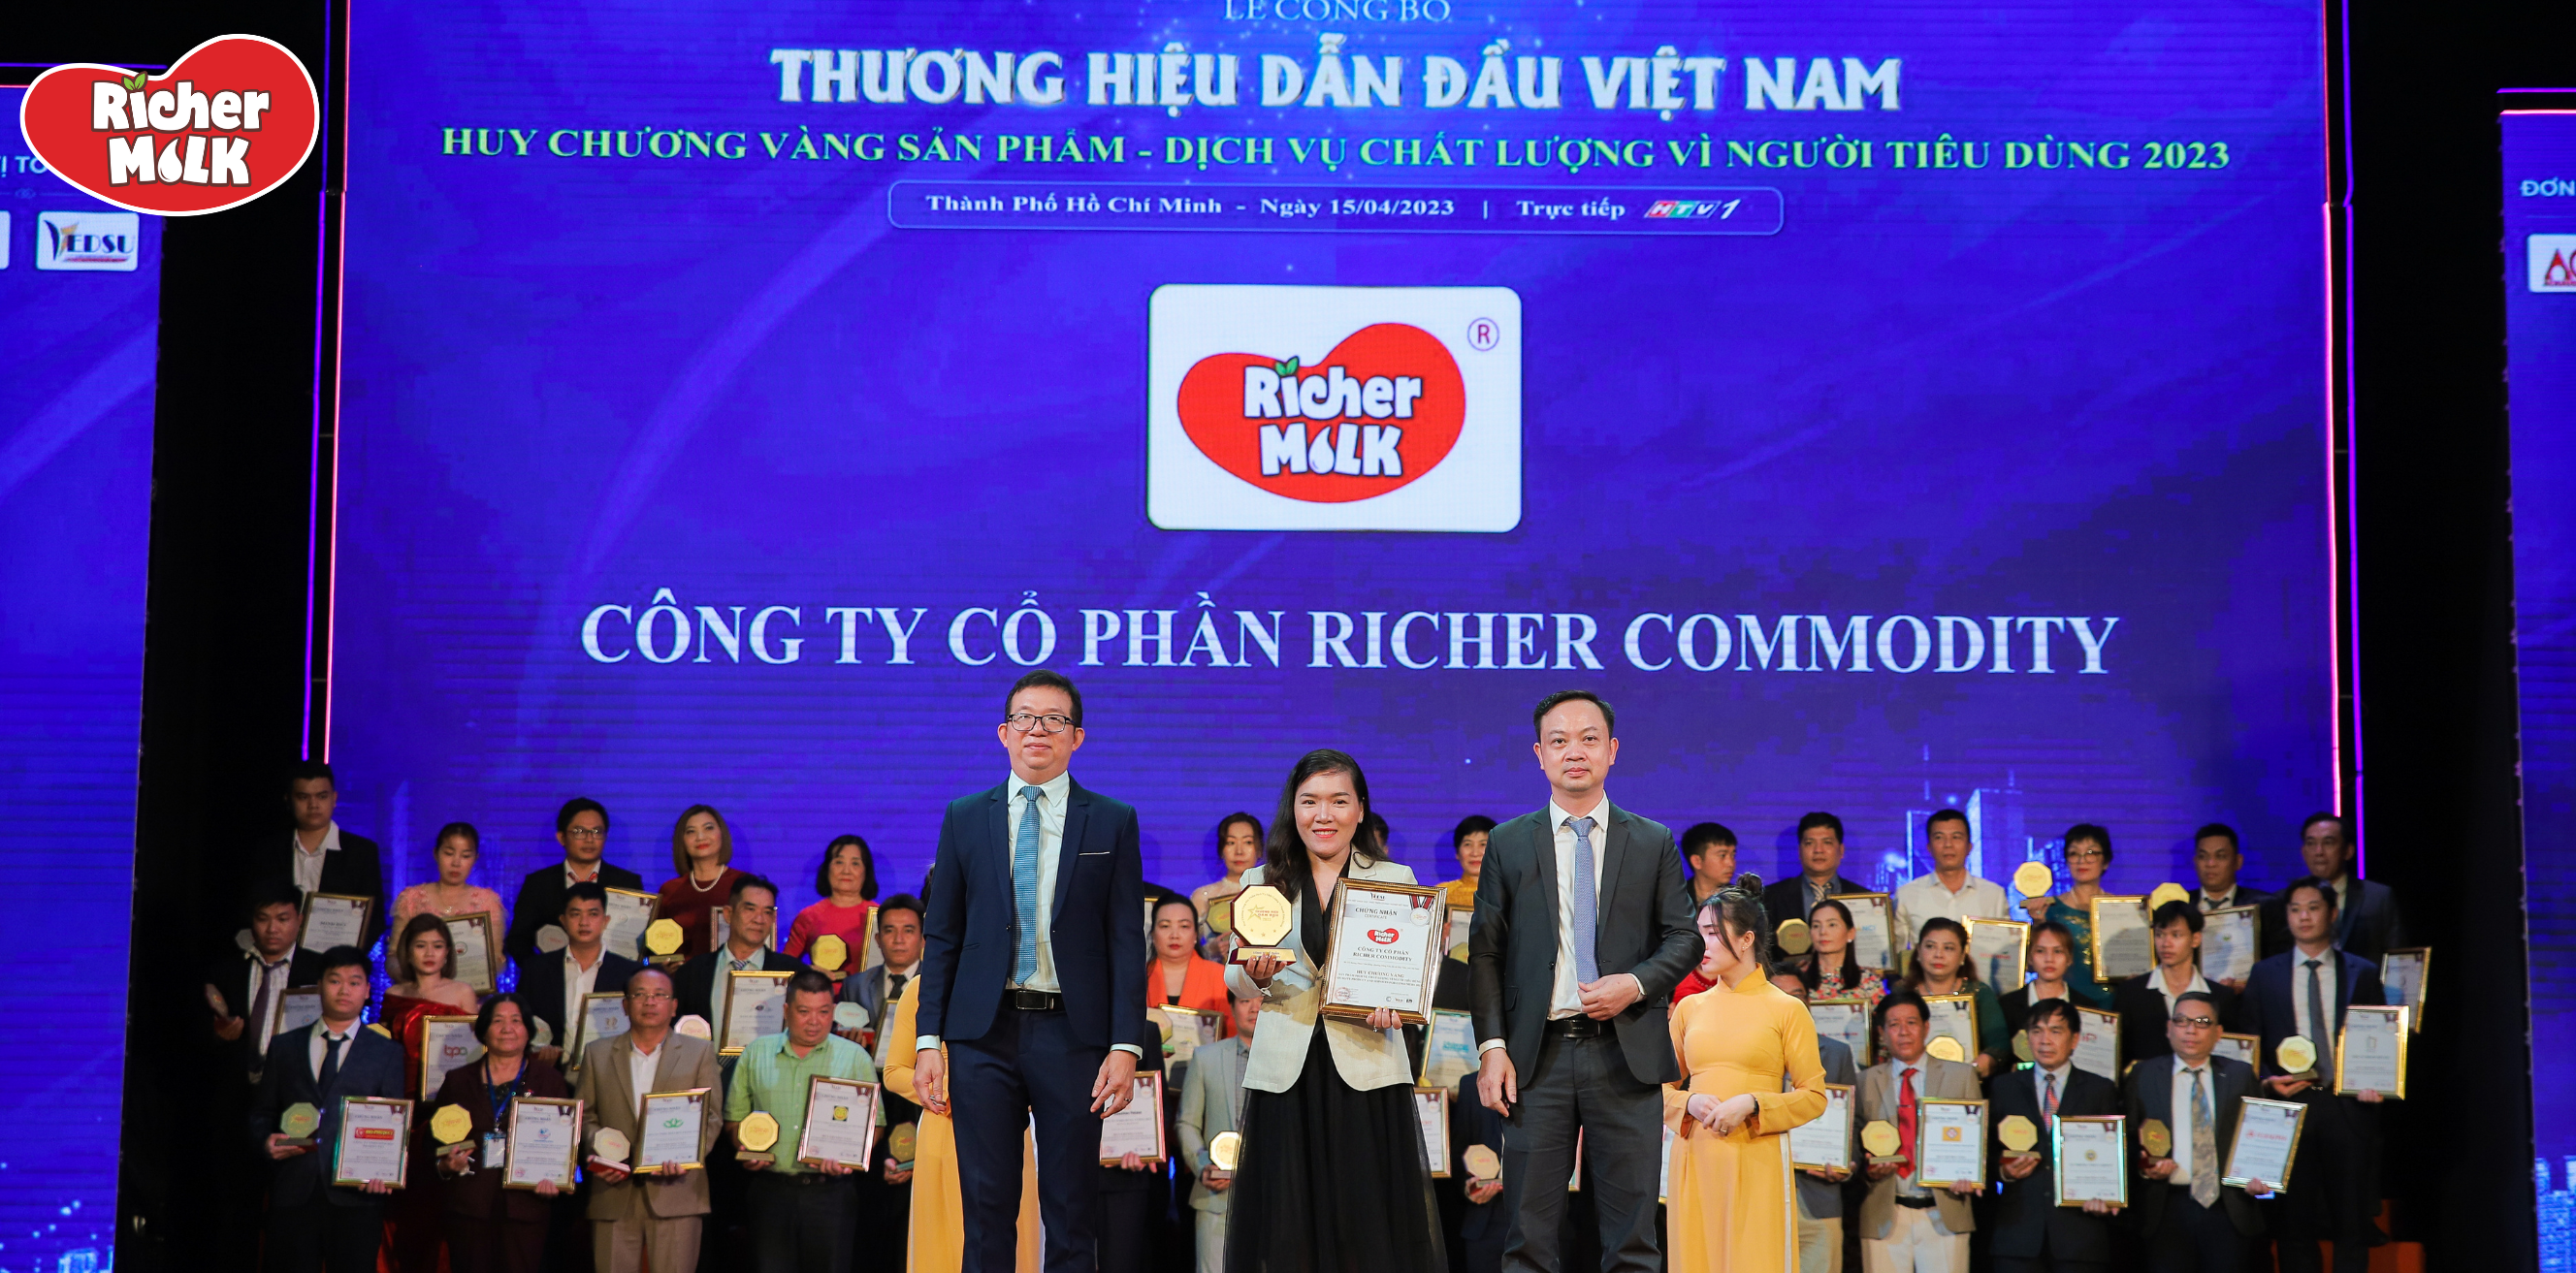 richer-milk-duoc-vinh-danh-trong-top-10-thuong-hieu-dan-dau-nam-2023